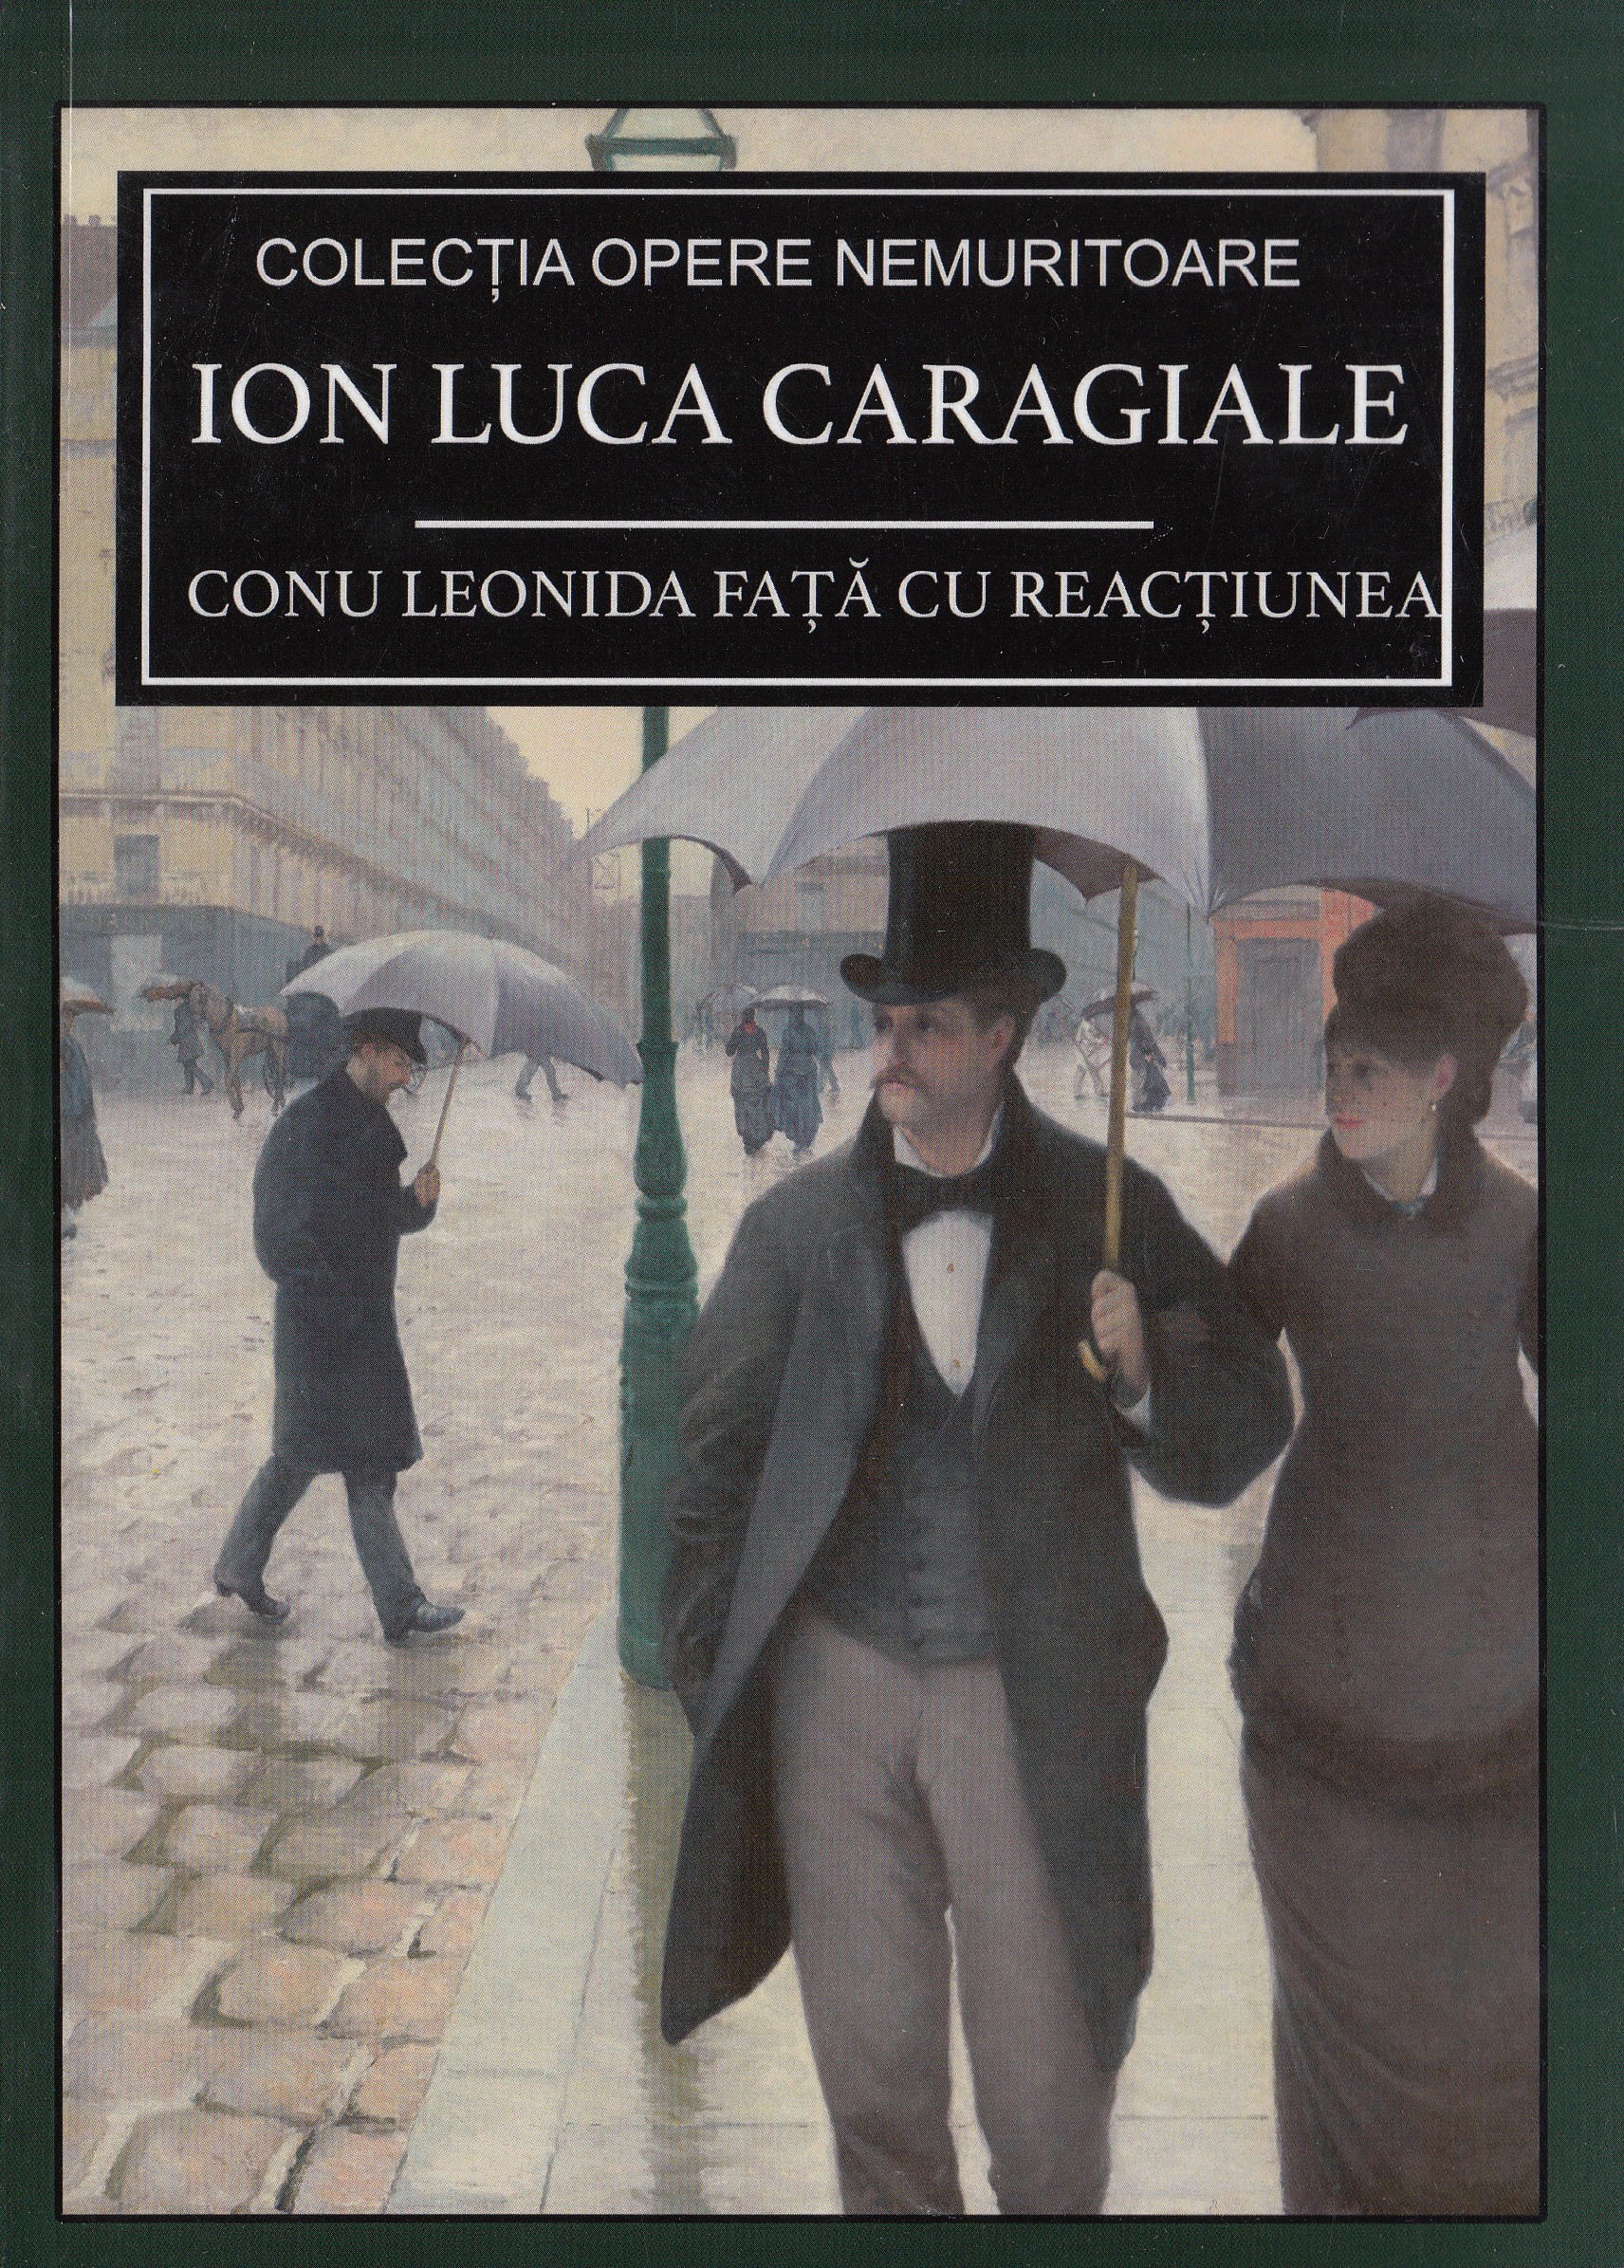 Conu Leonida fata cu reactiunea - Ion Luca Caragiale